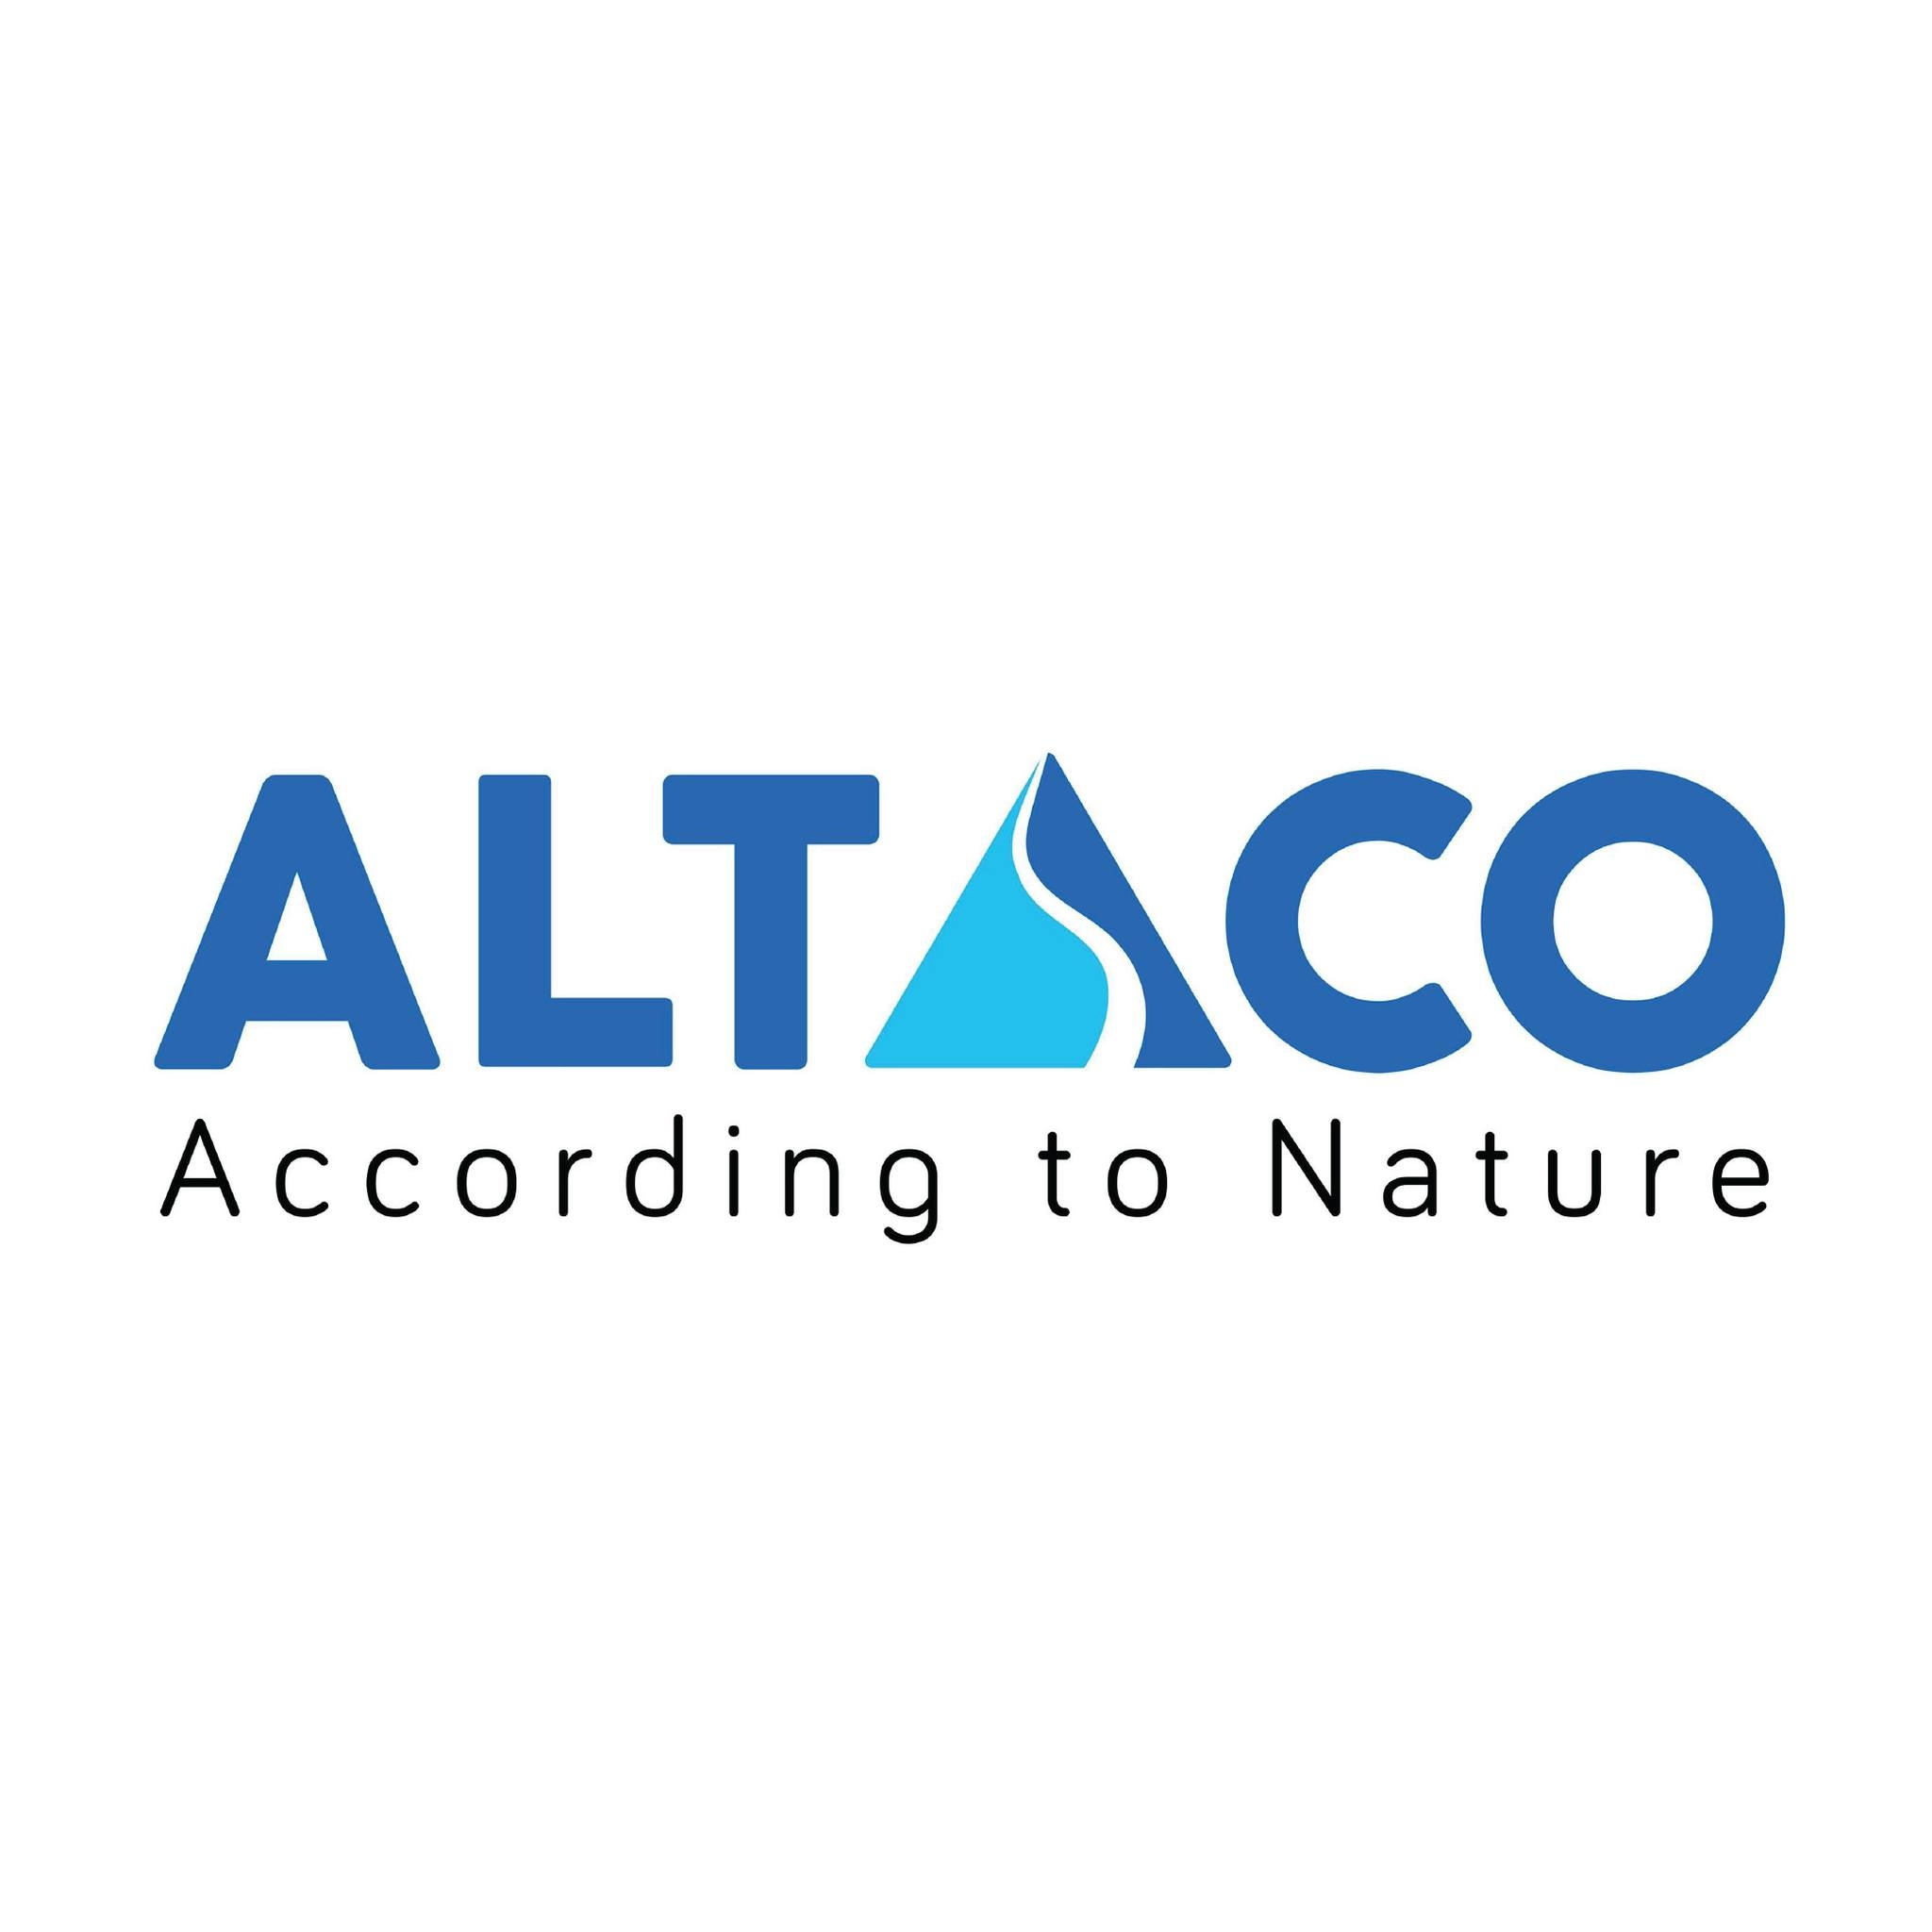 Logo Công ty Cổ phần Thương mại Altaco